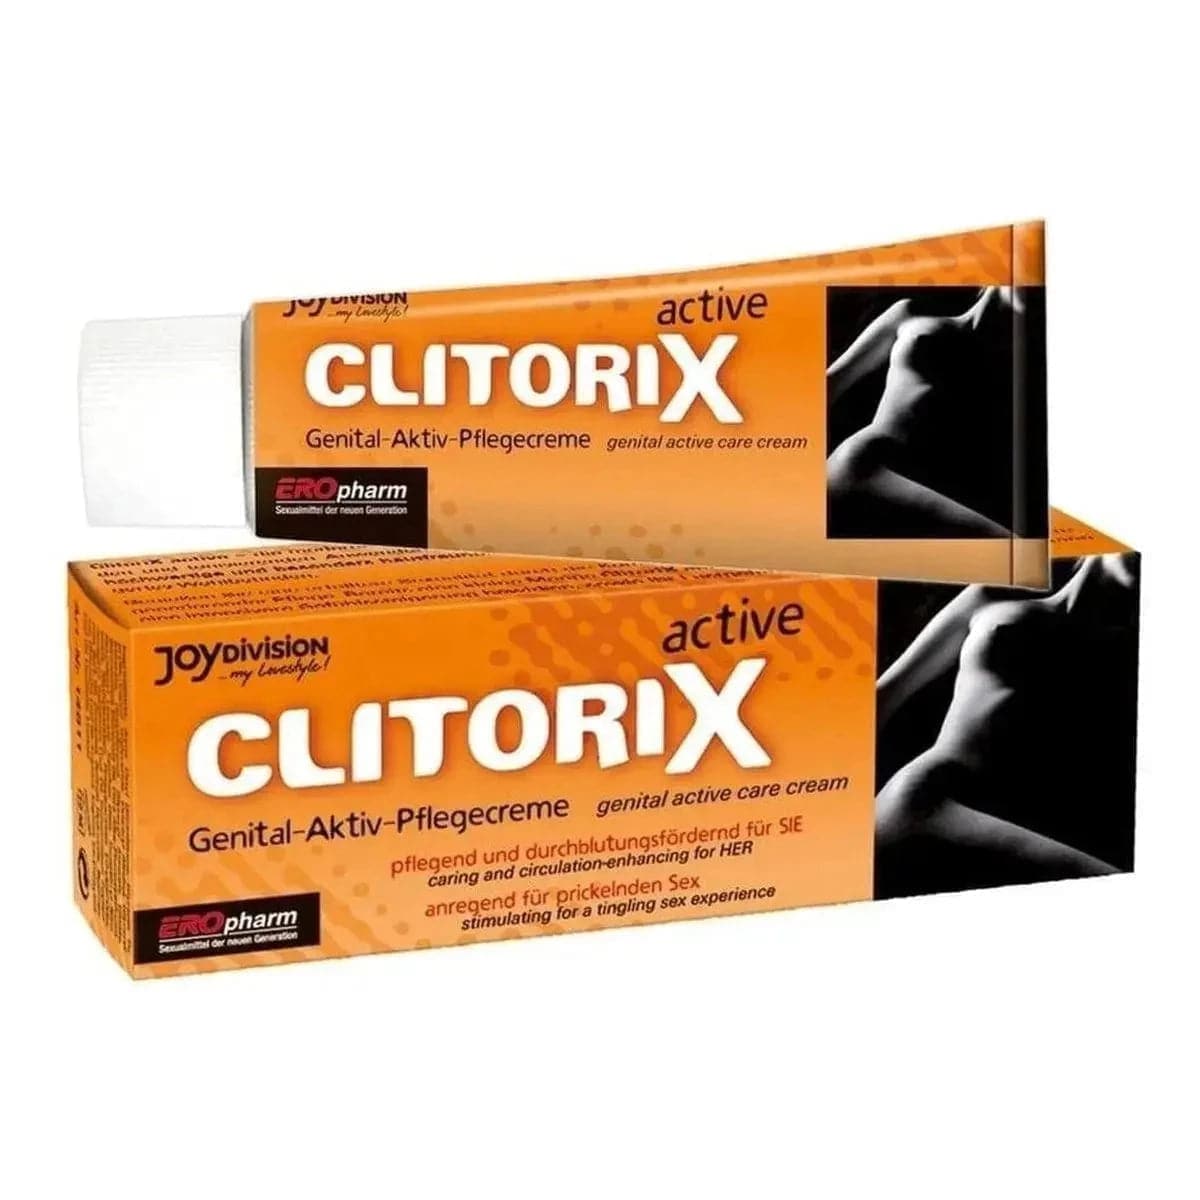 Creme Estimulante Clitorix 40ml - Impulsione sua Estimulação Sexual - Pérola SexShop